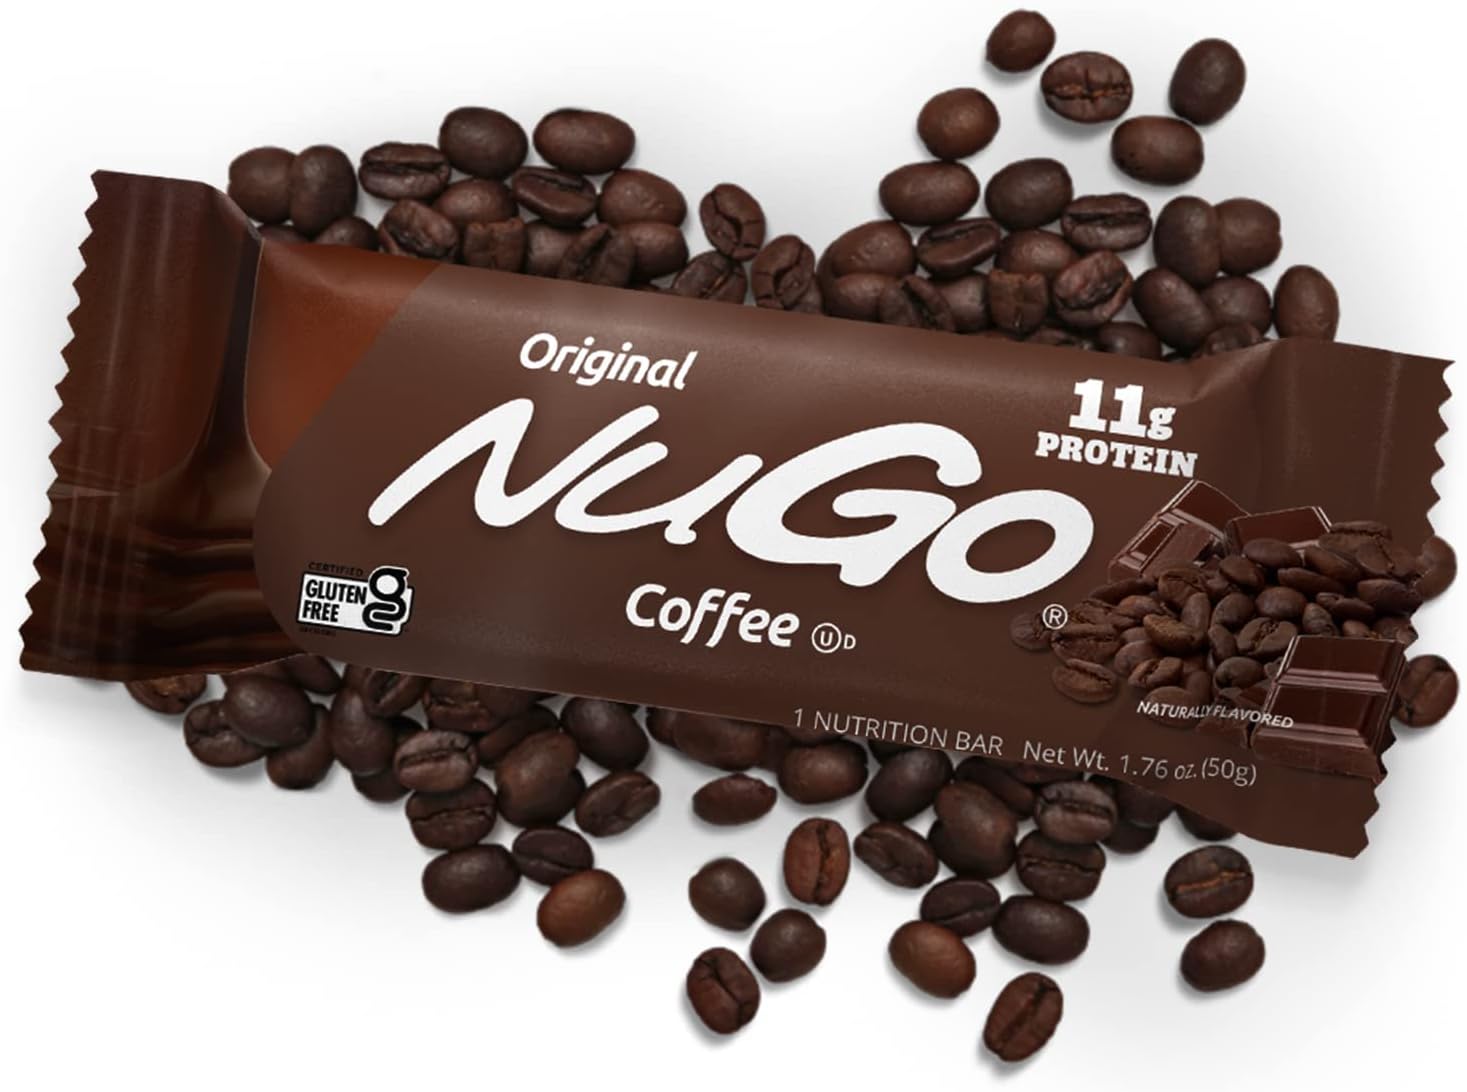 NuGo Protein Bar, Coffee, 11g Protein, Gluten Free, 15 Count